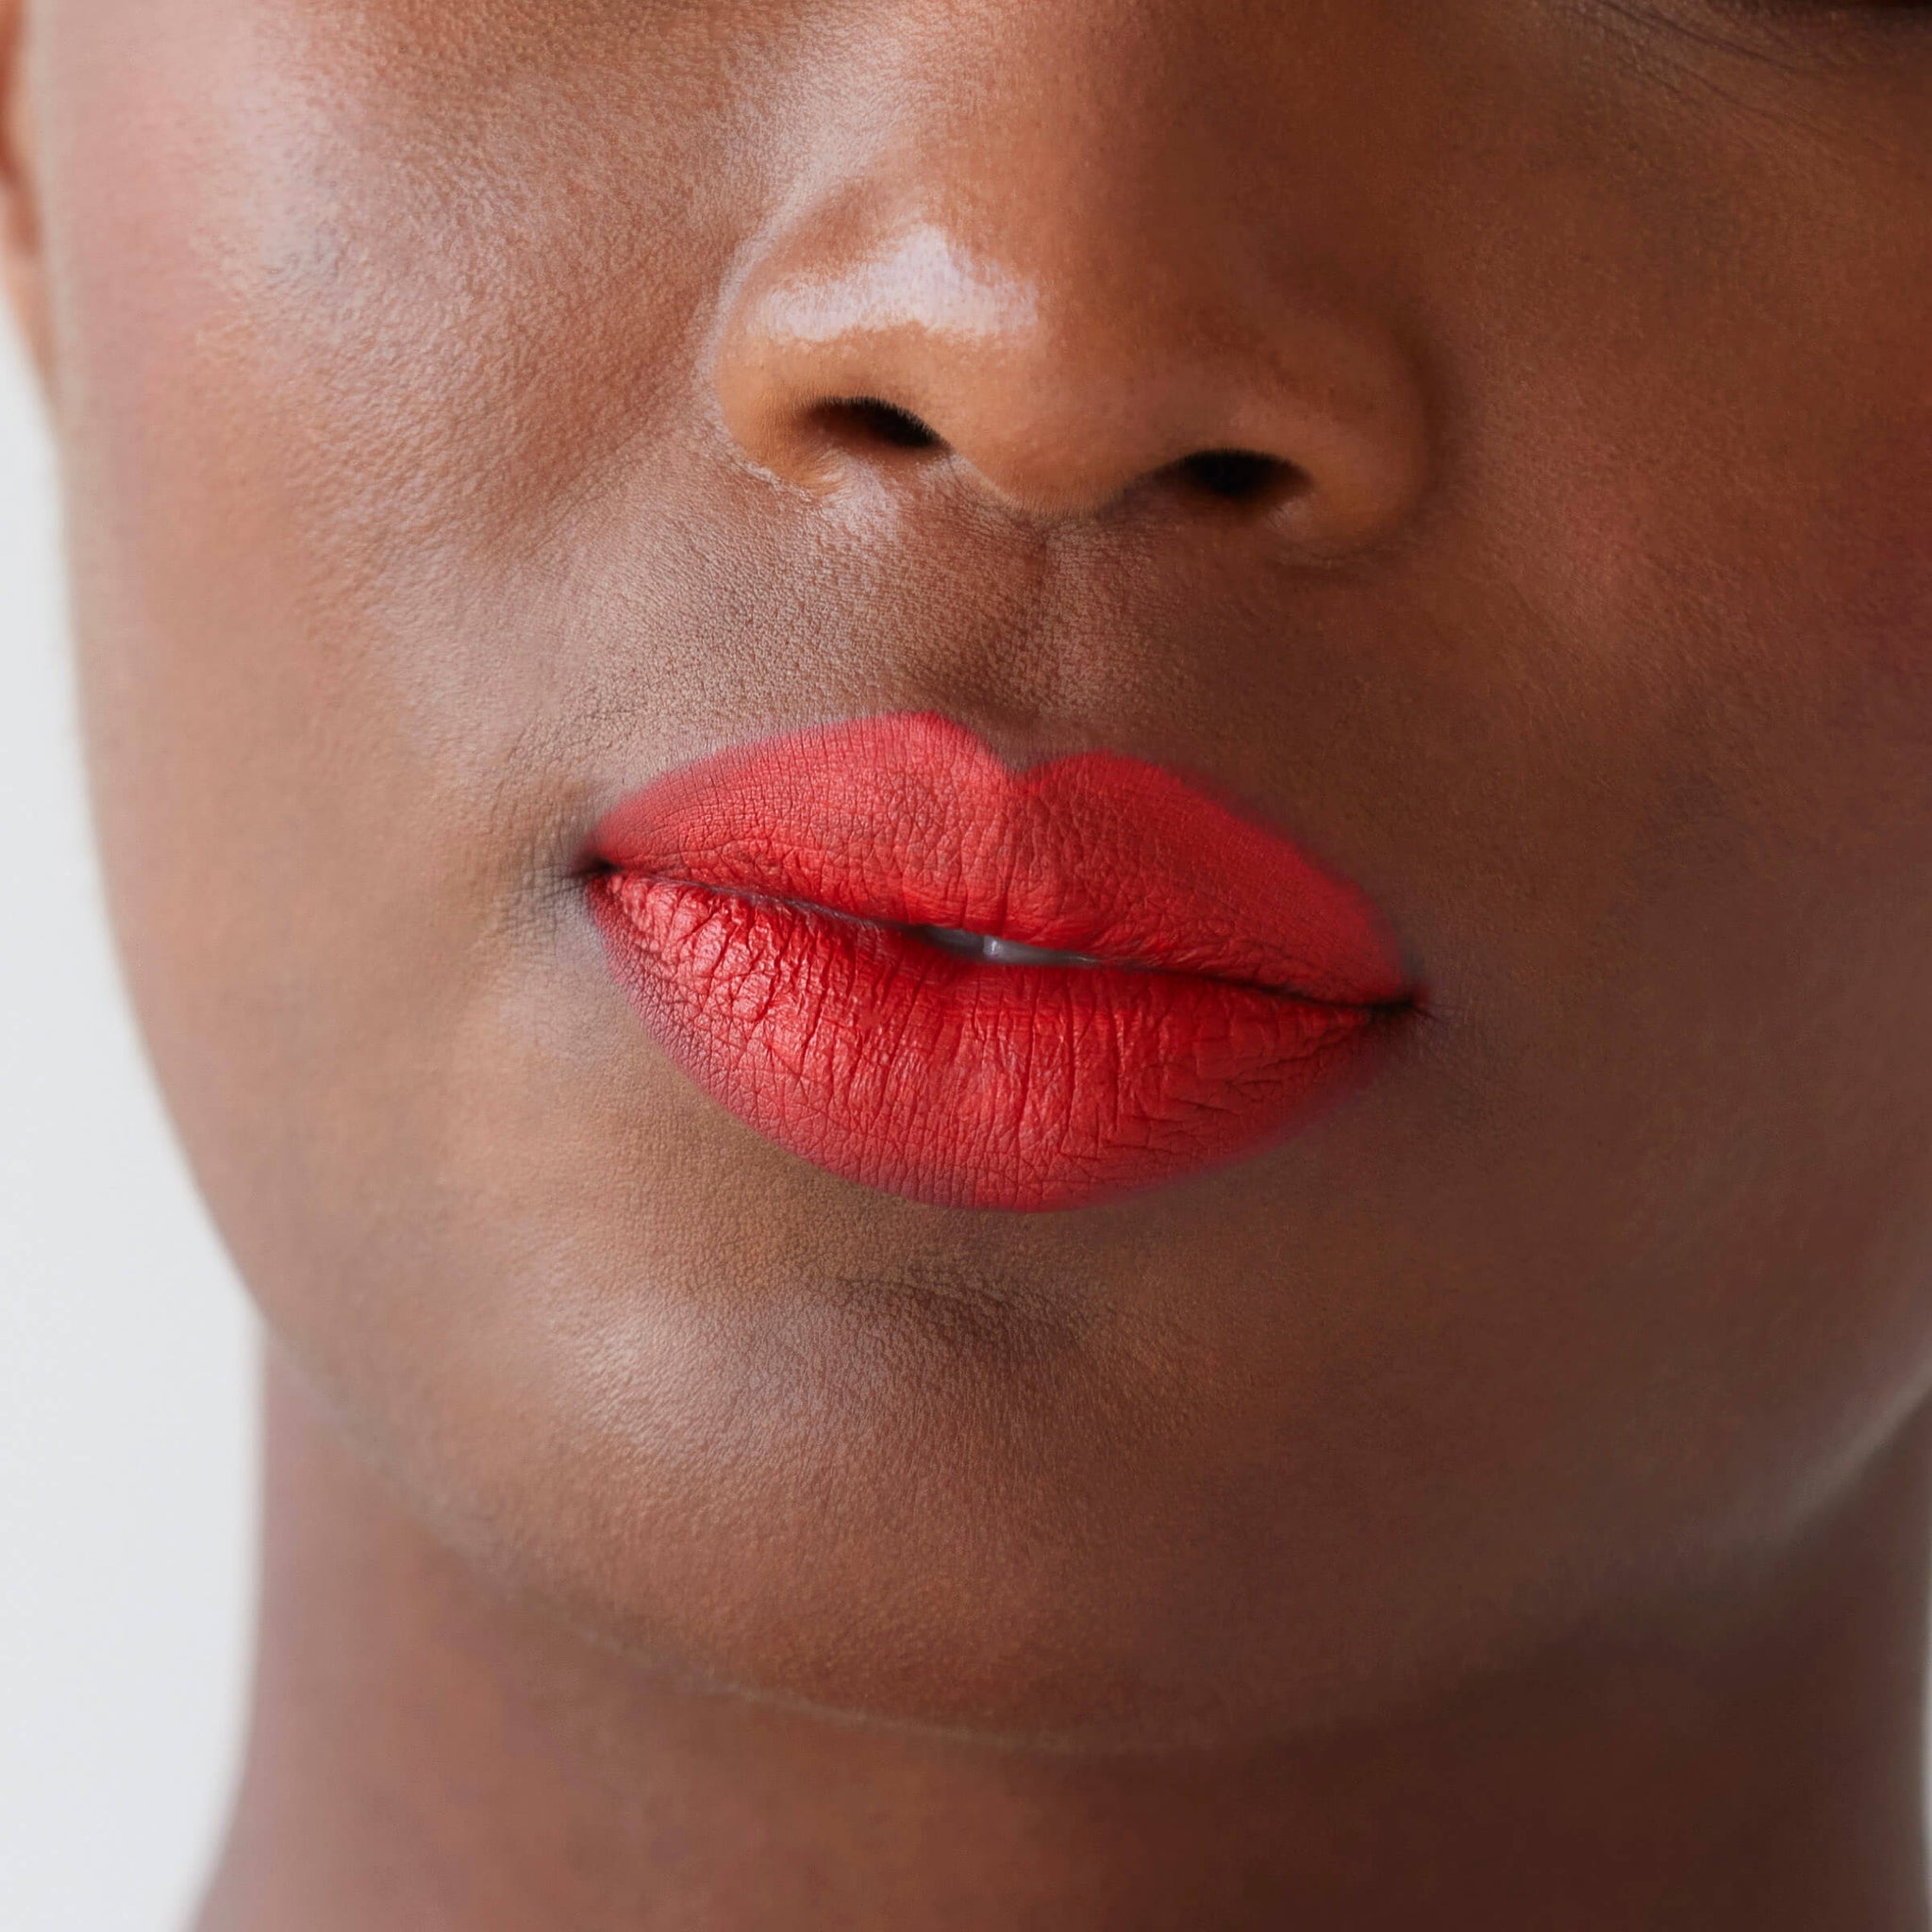 Kester Black, Lipstick, Lippenstift, Long lasting lipstick, matte lippenstift, lip service, Kester Black, Kester, Nourished, make-up, natural make-up, lips, red lips